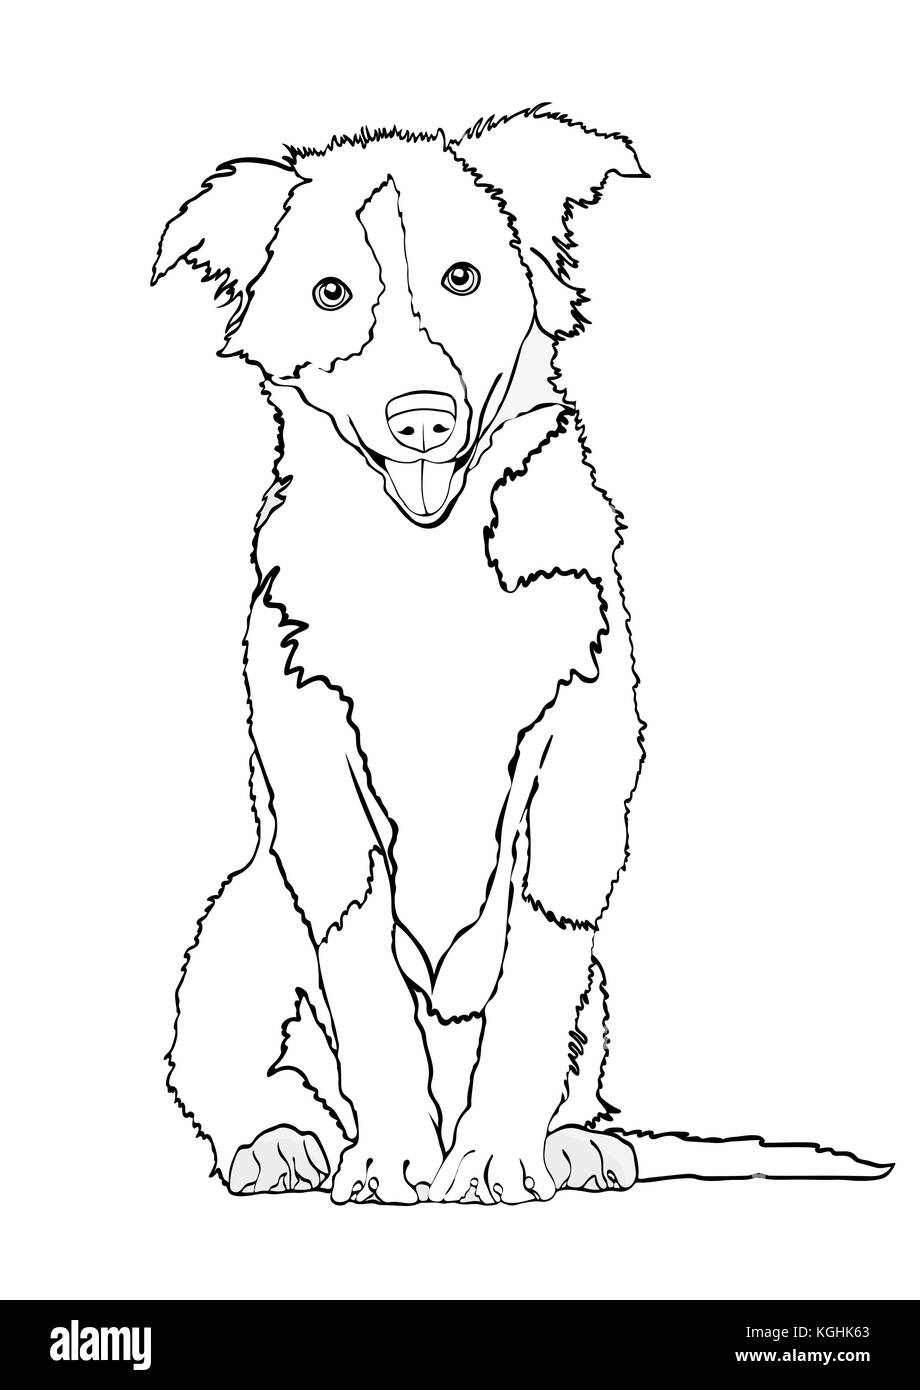 Hund vektor Kontur Zeichnung, Skizze, Malbuch. schwarze und weiße Kontur cartoon shaggy Dog in voller Länge isoliert auf weißem Stock Vektor